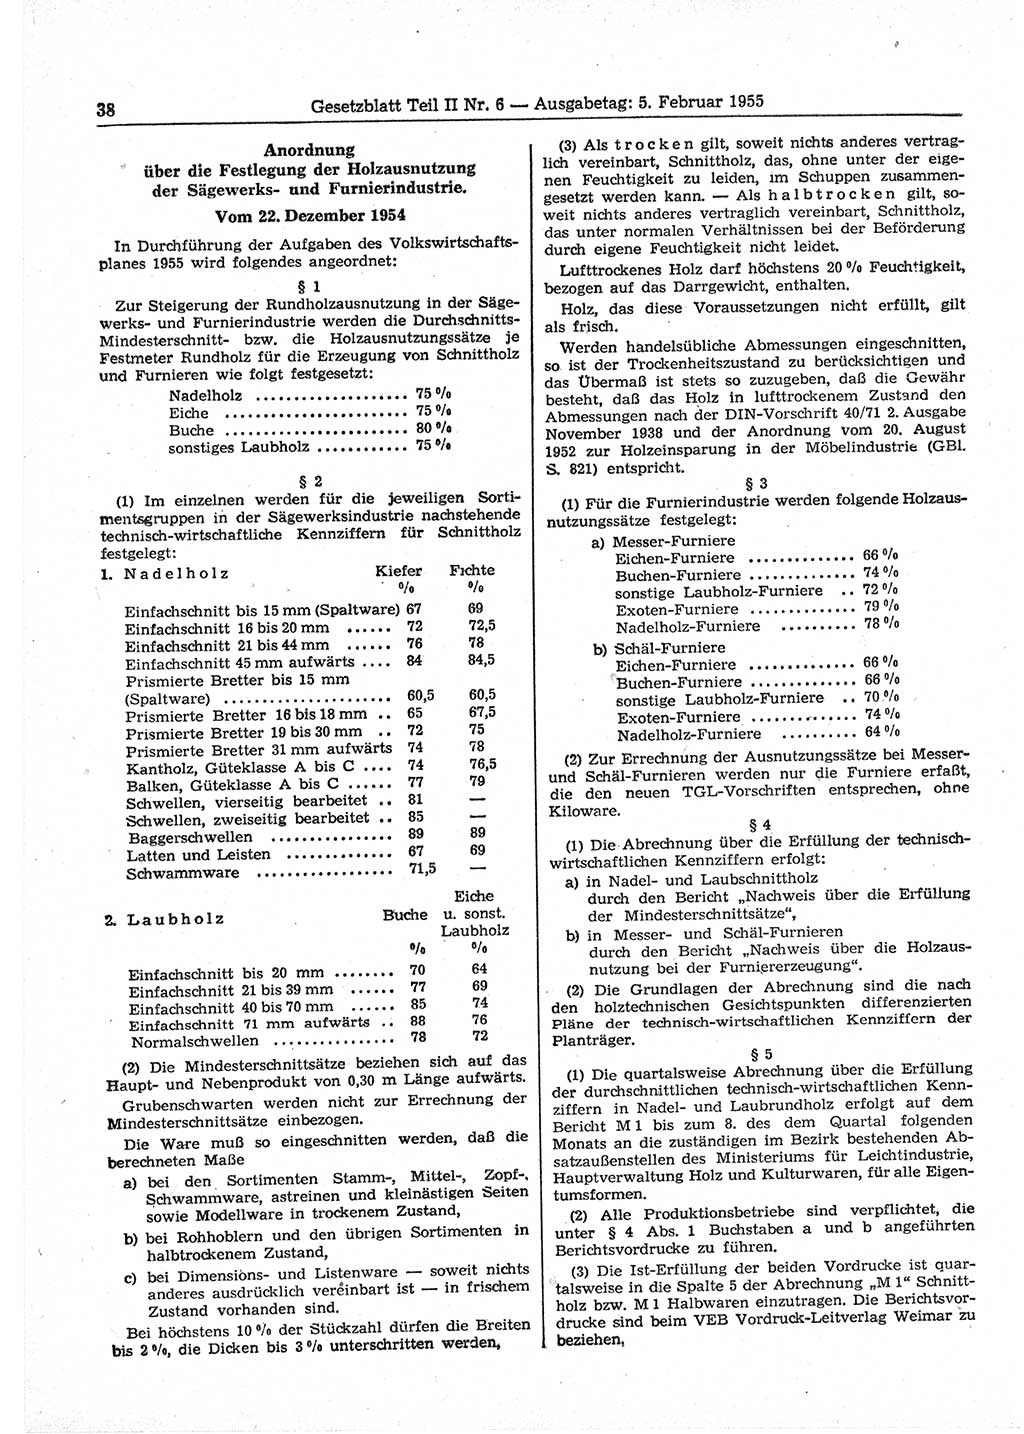 Gesetzblatt (GBl.) der Deutschen Demokratischen Republik (DDR) Teil ⅠⅠ 1955, Seite 38 (GBl. DDR ⅠⅠ 1955, S. 38)